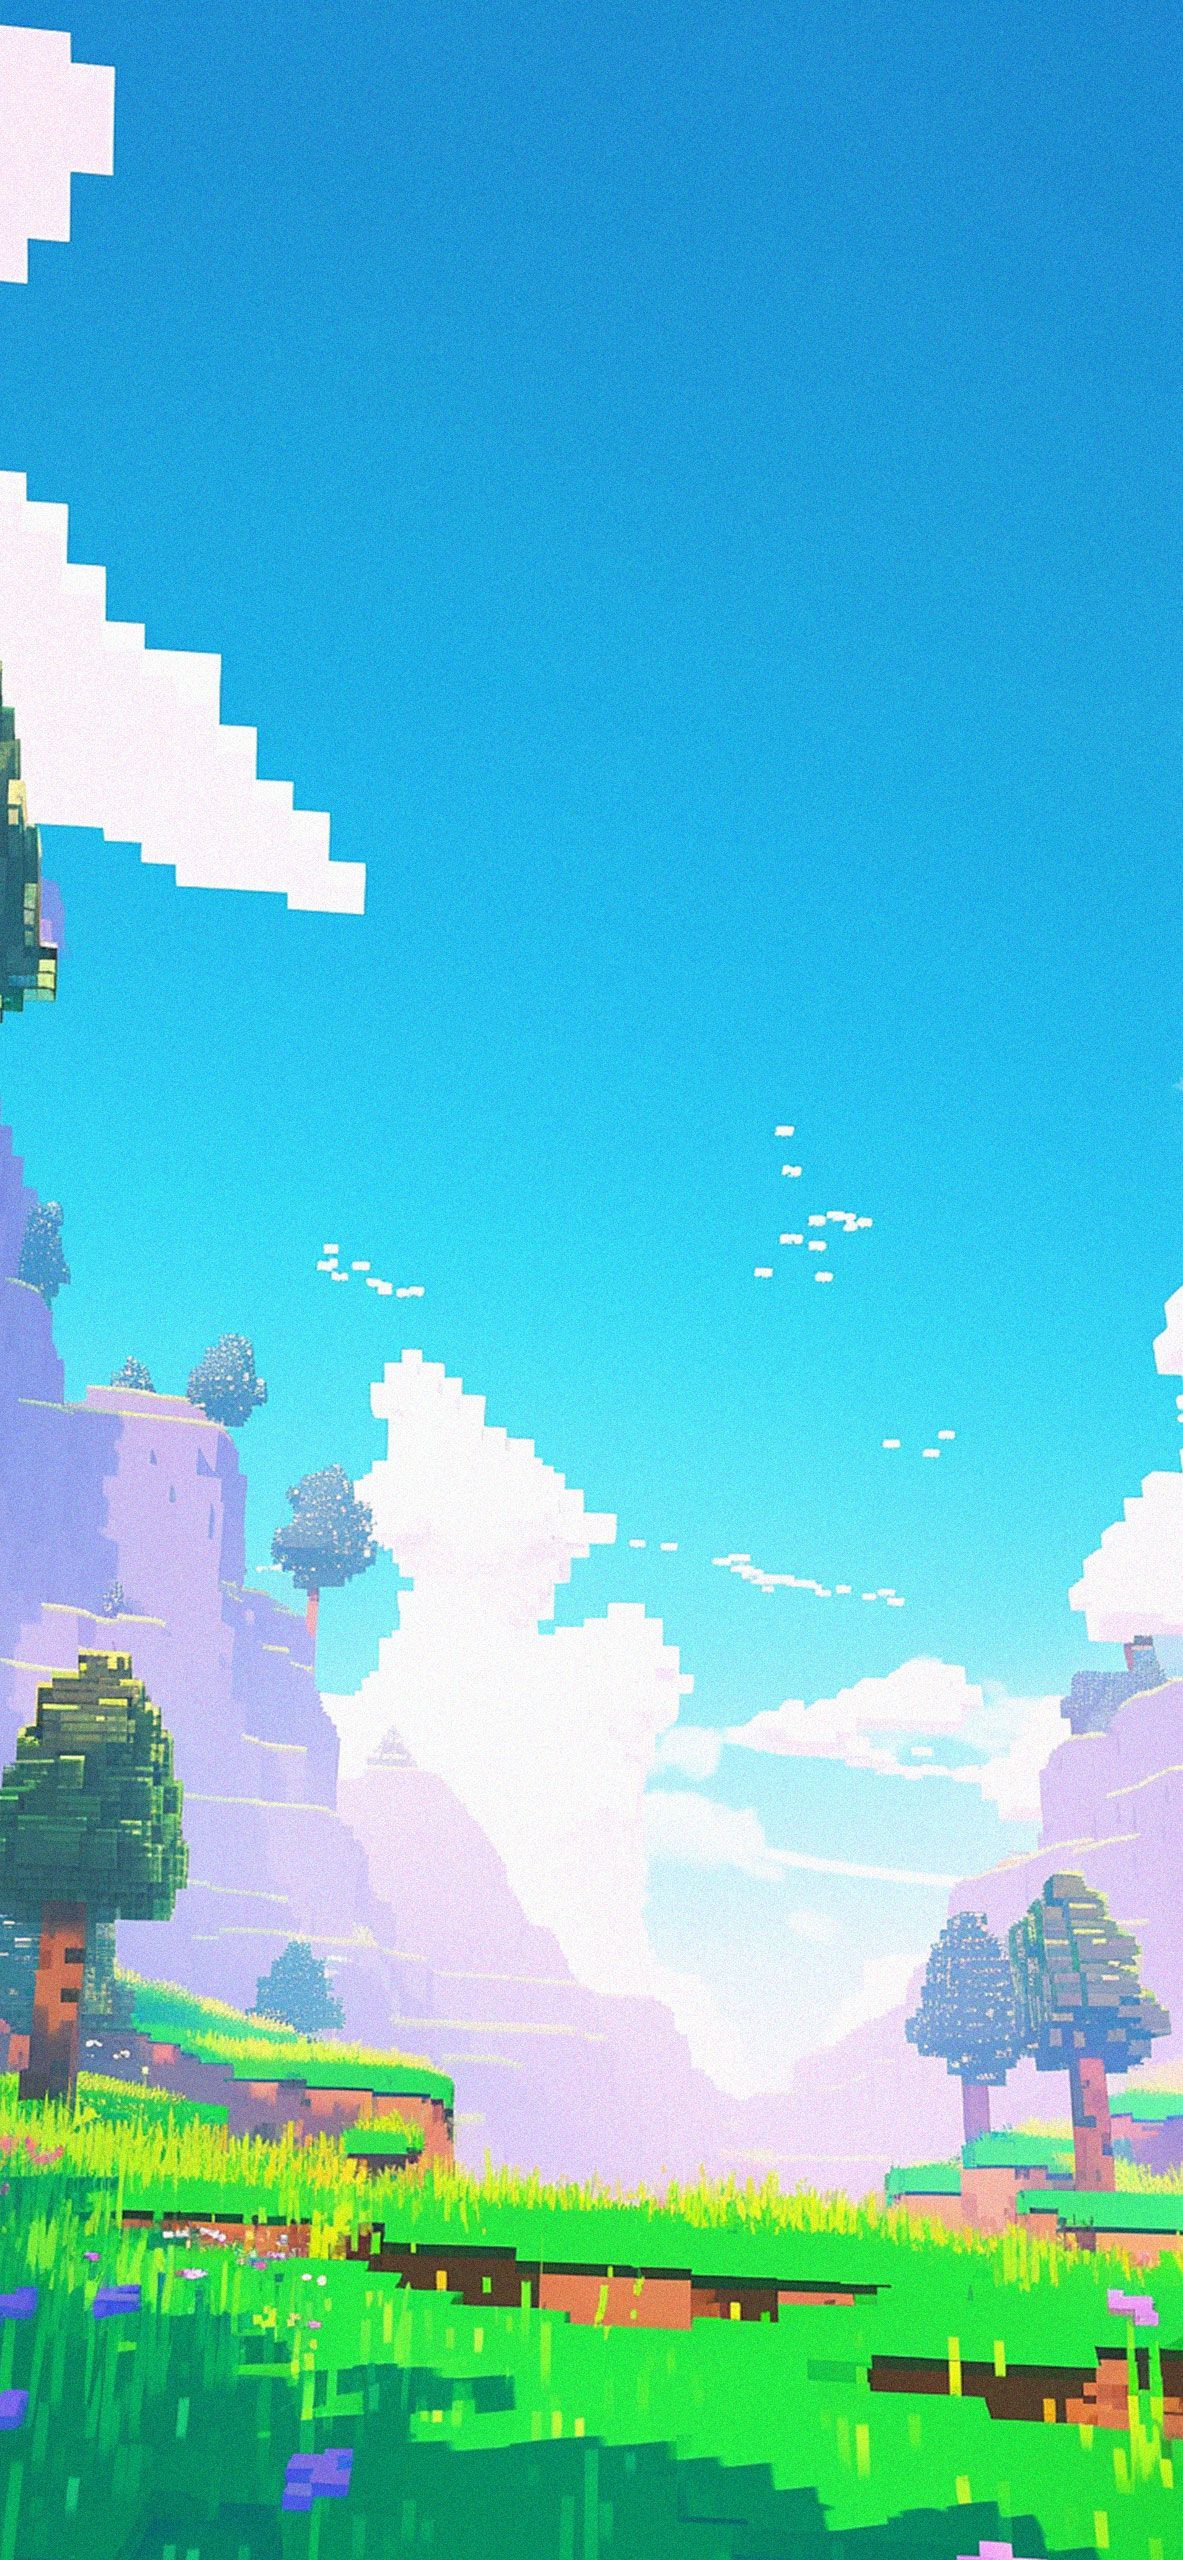 1080x1920 px pixel art sky grass clouds iPhone 8 wallpaper background - Beautiful, pixel art, Minecraft